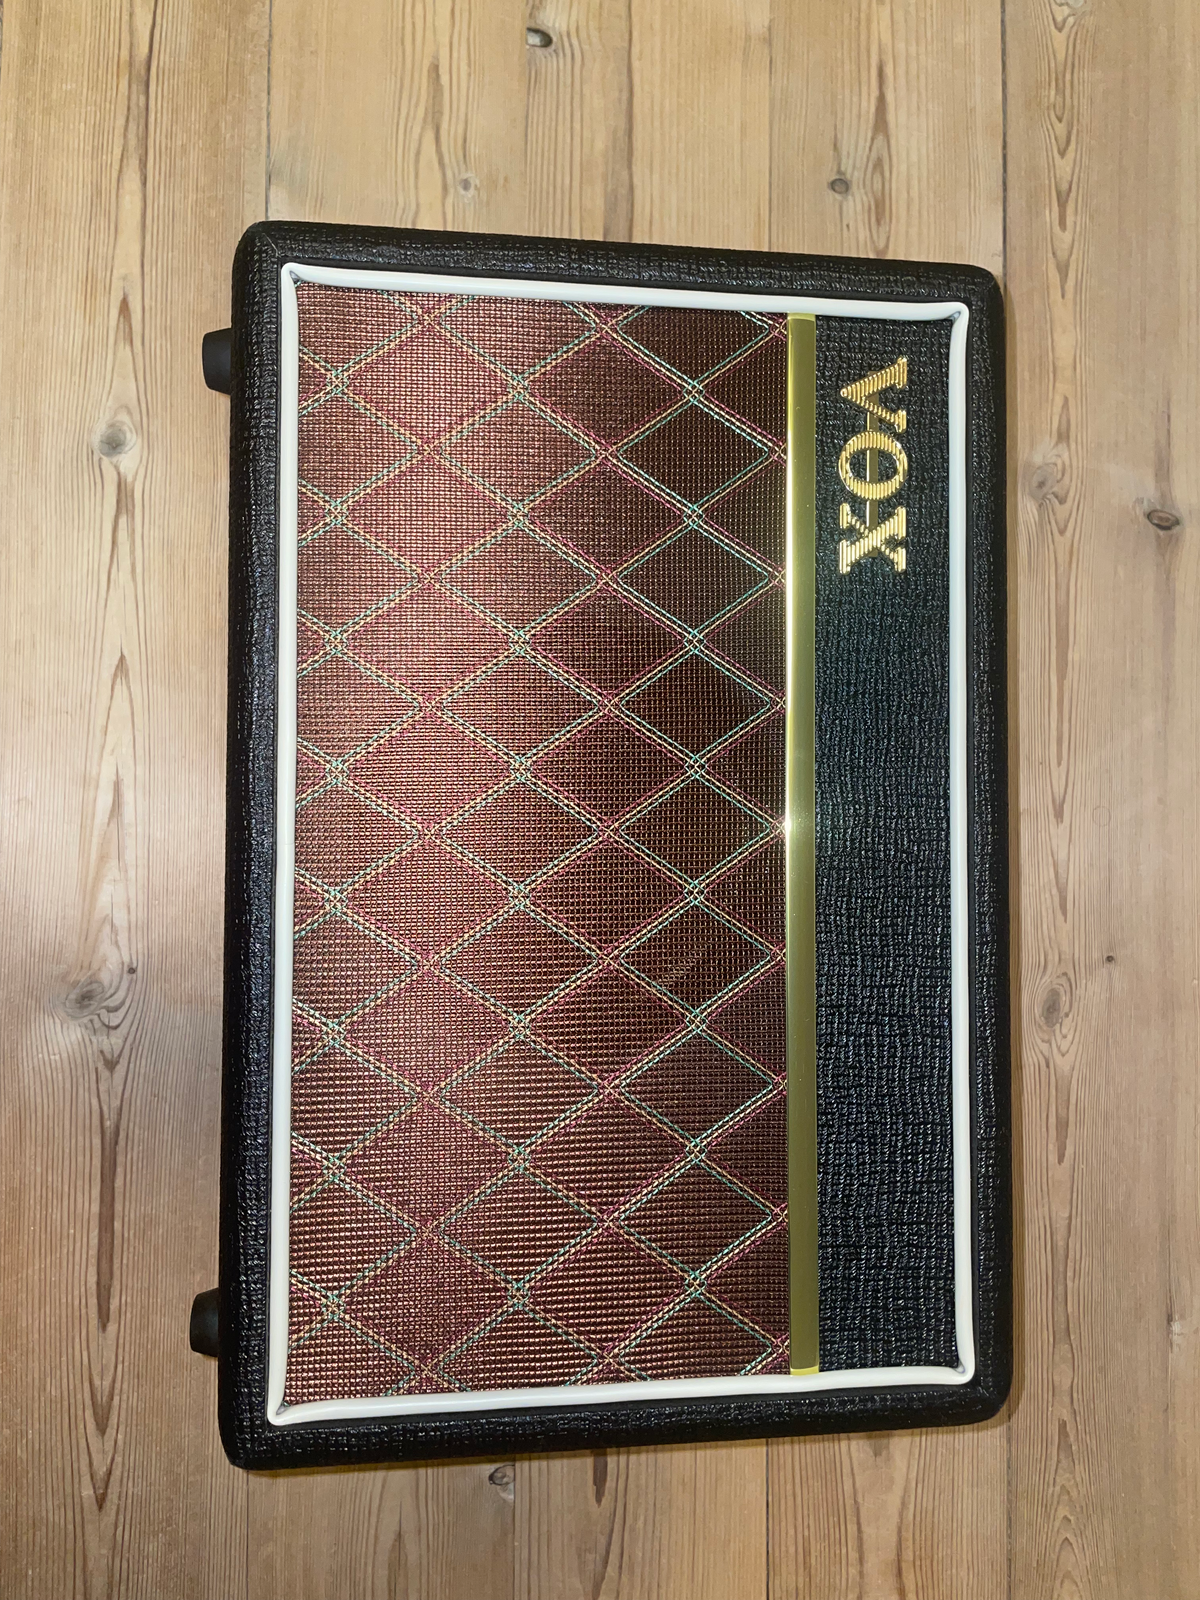 Guitaramplifier, Vox Pathfinder 10, 10 W